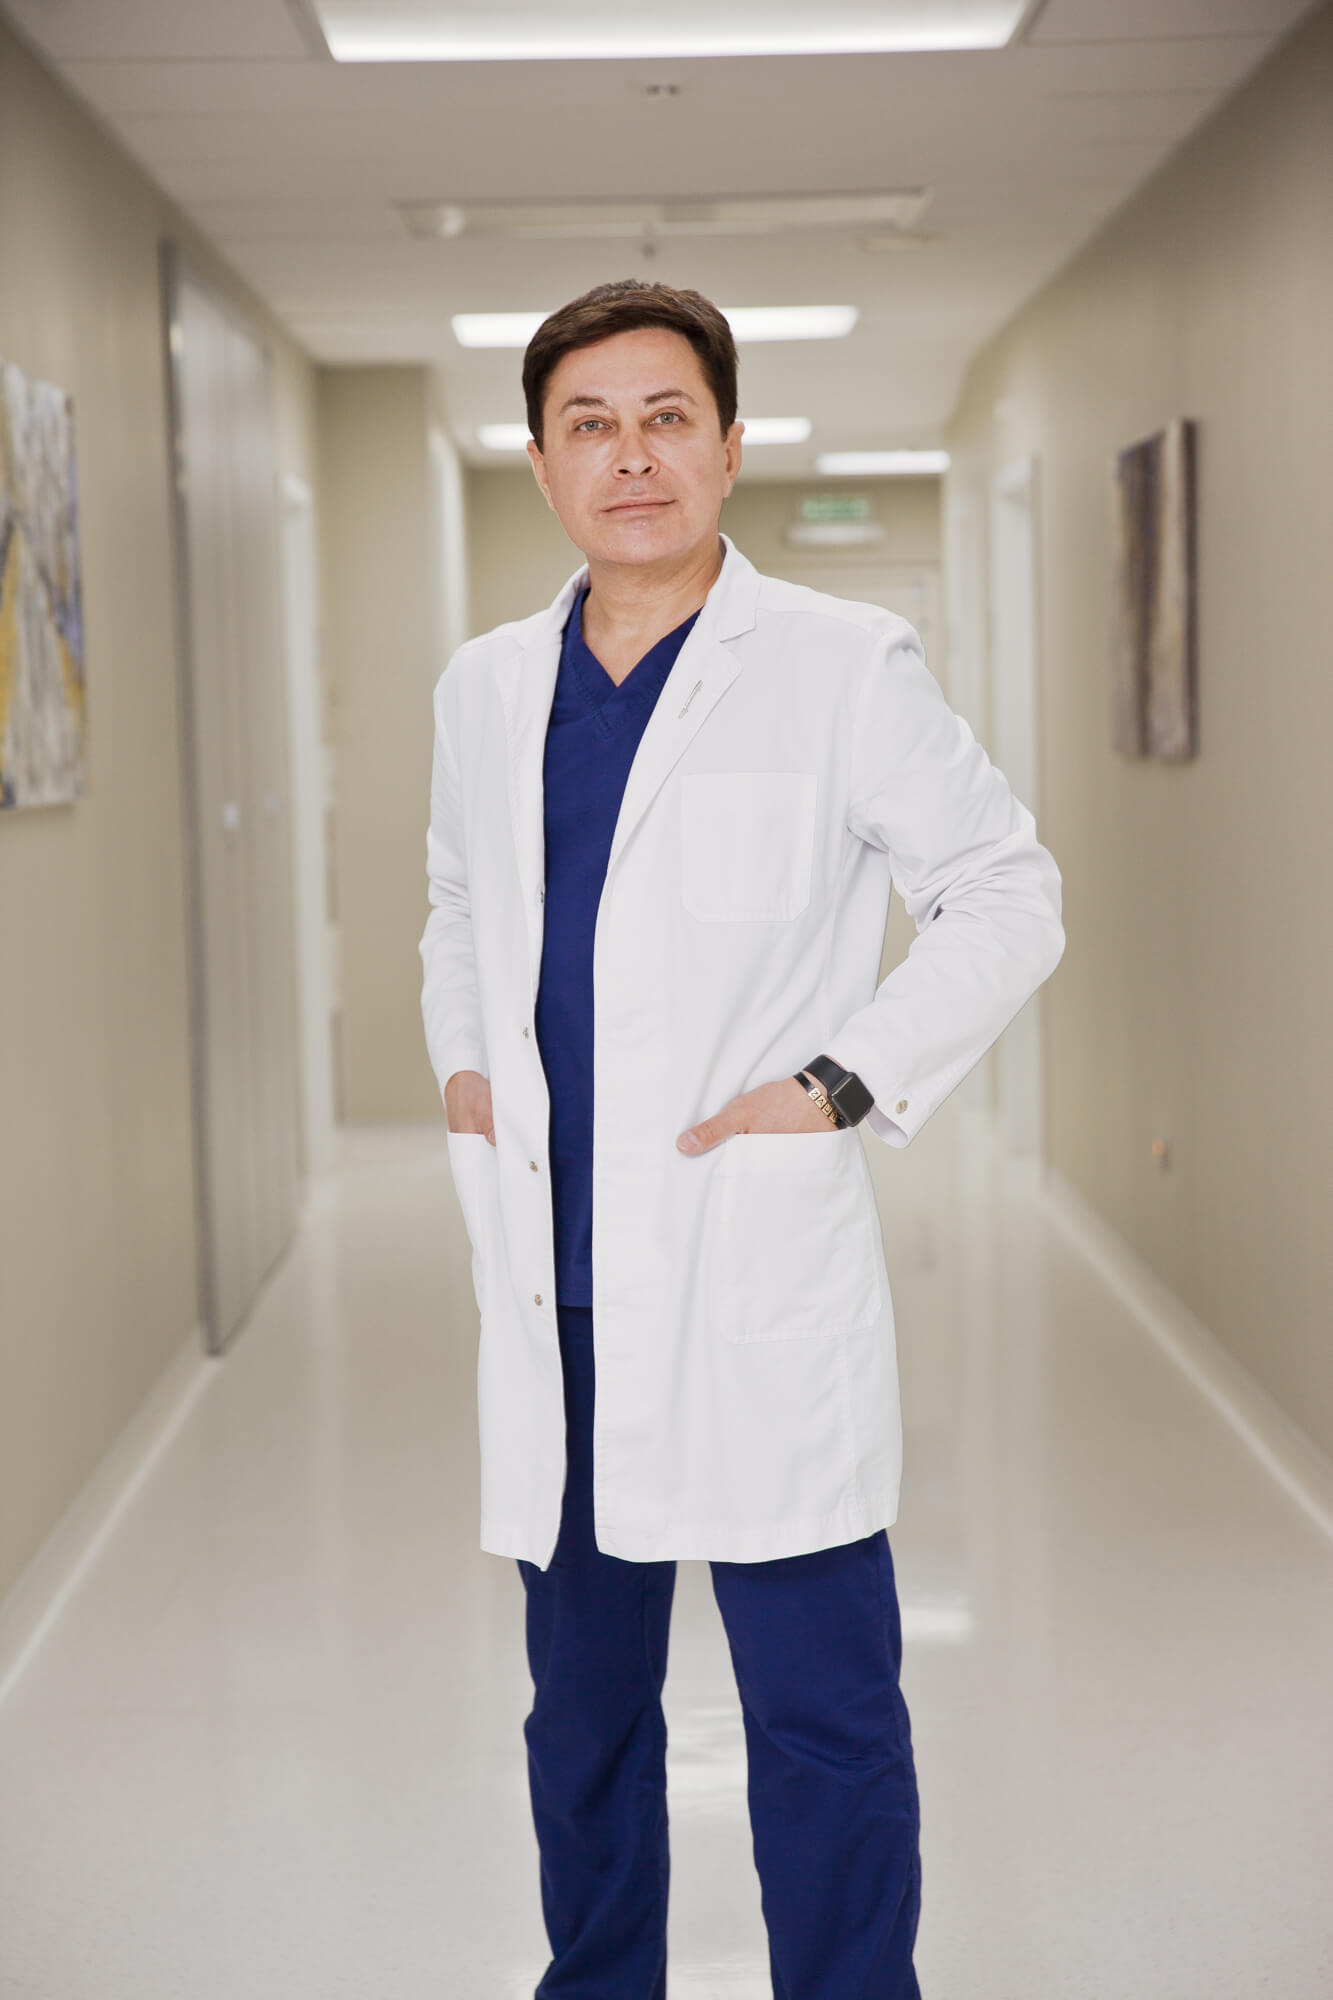 Заур Бытдаев врач клиники "Бьюти доктор" 